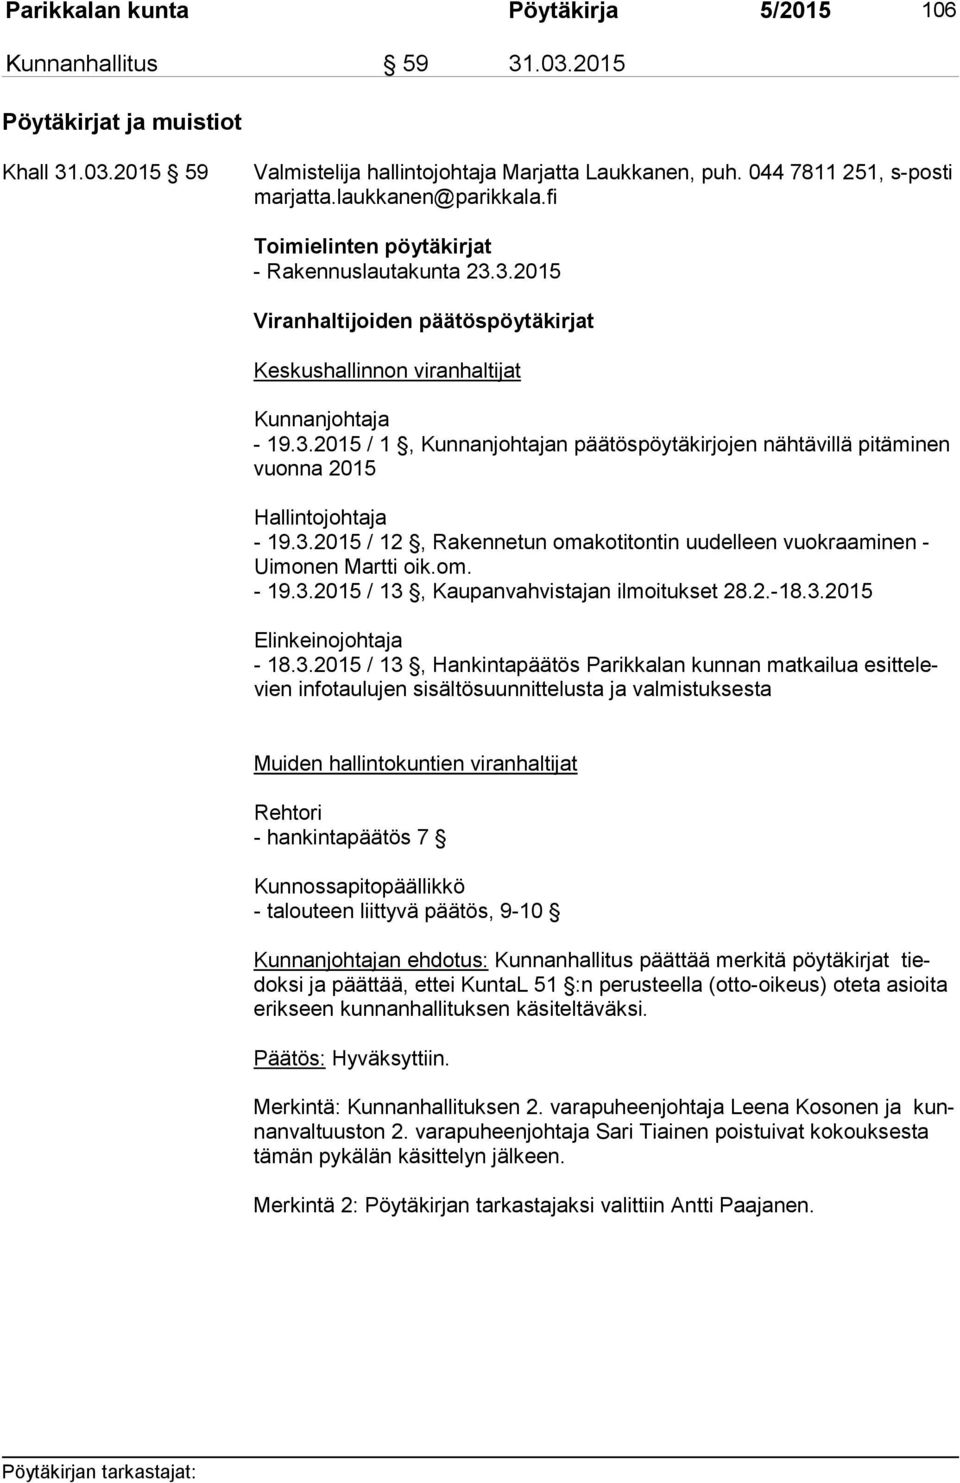 3.2015 / 12, Rakennetun omakotitontin uudelleen vuokraaminen - Ui mo nen Martti oik.om. - 19.3.2015 / 13, Kaupanvahvistajan ilmoitukset 28.2.-18.3.2015 Elinkeinojohtaja - 18.3.2015 / 13,